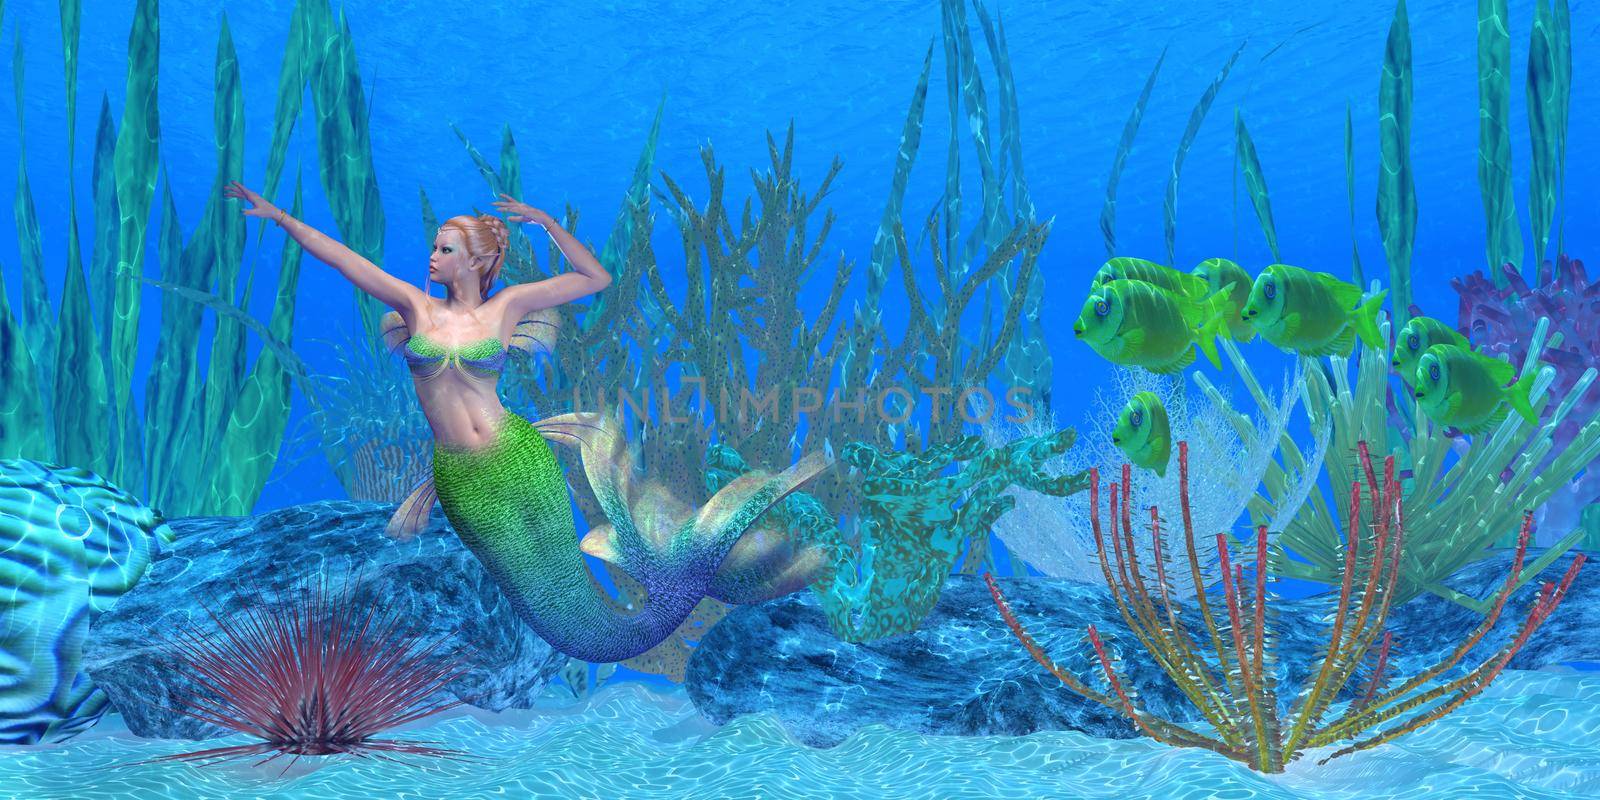 A school of Lemonpeel Angelfish watch as a beautiful mermaid swims near a underwater reef.